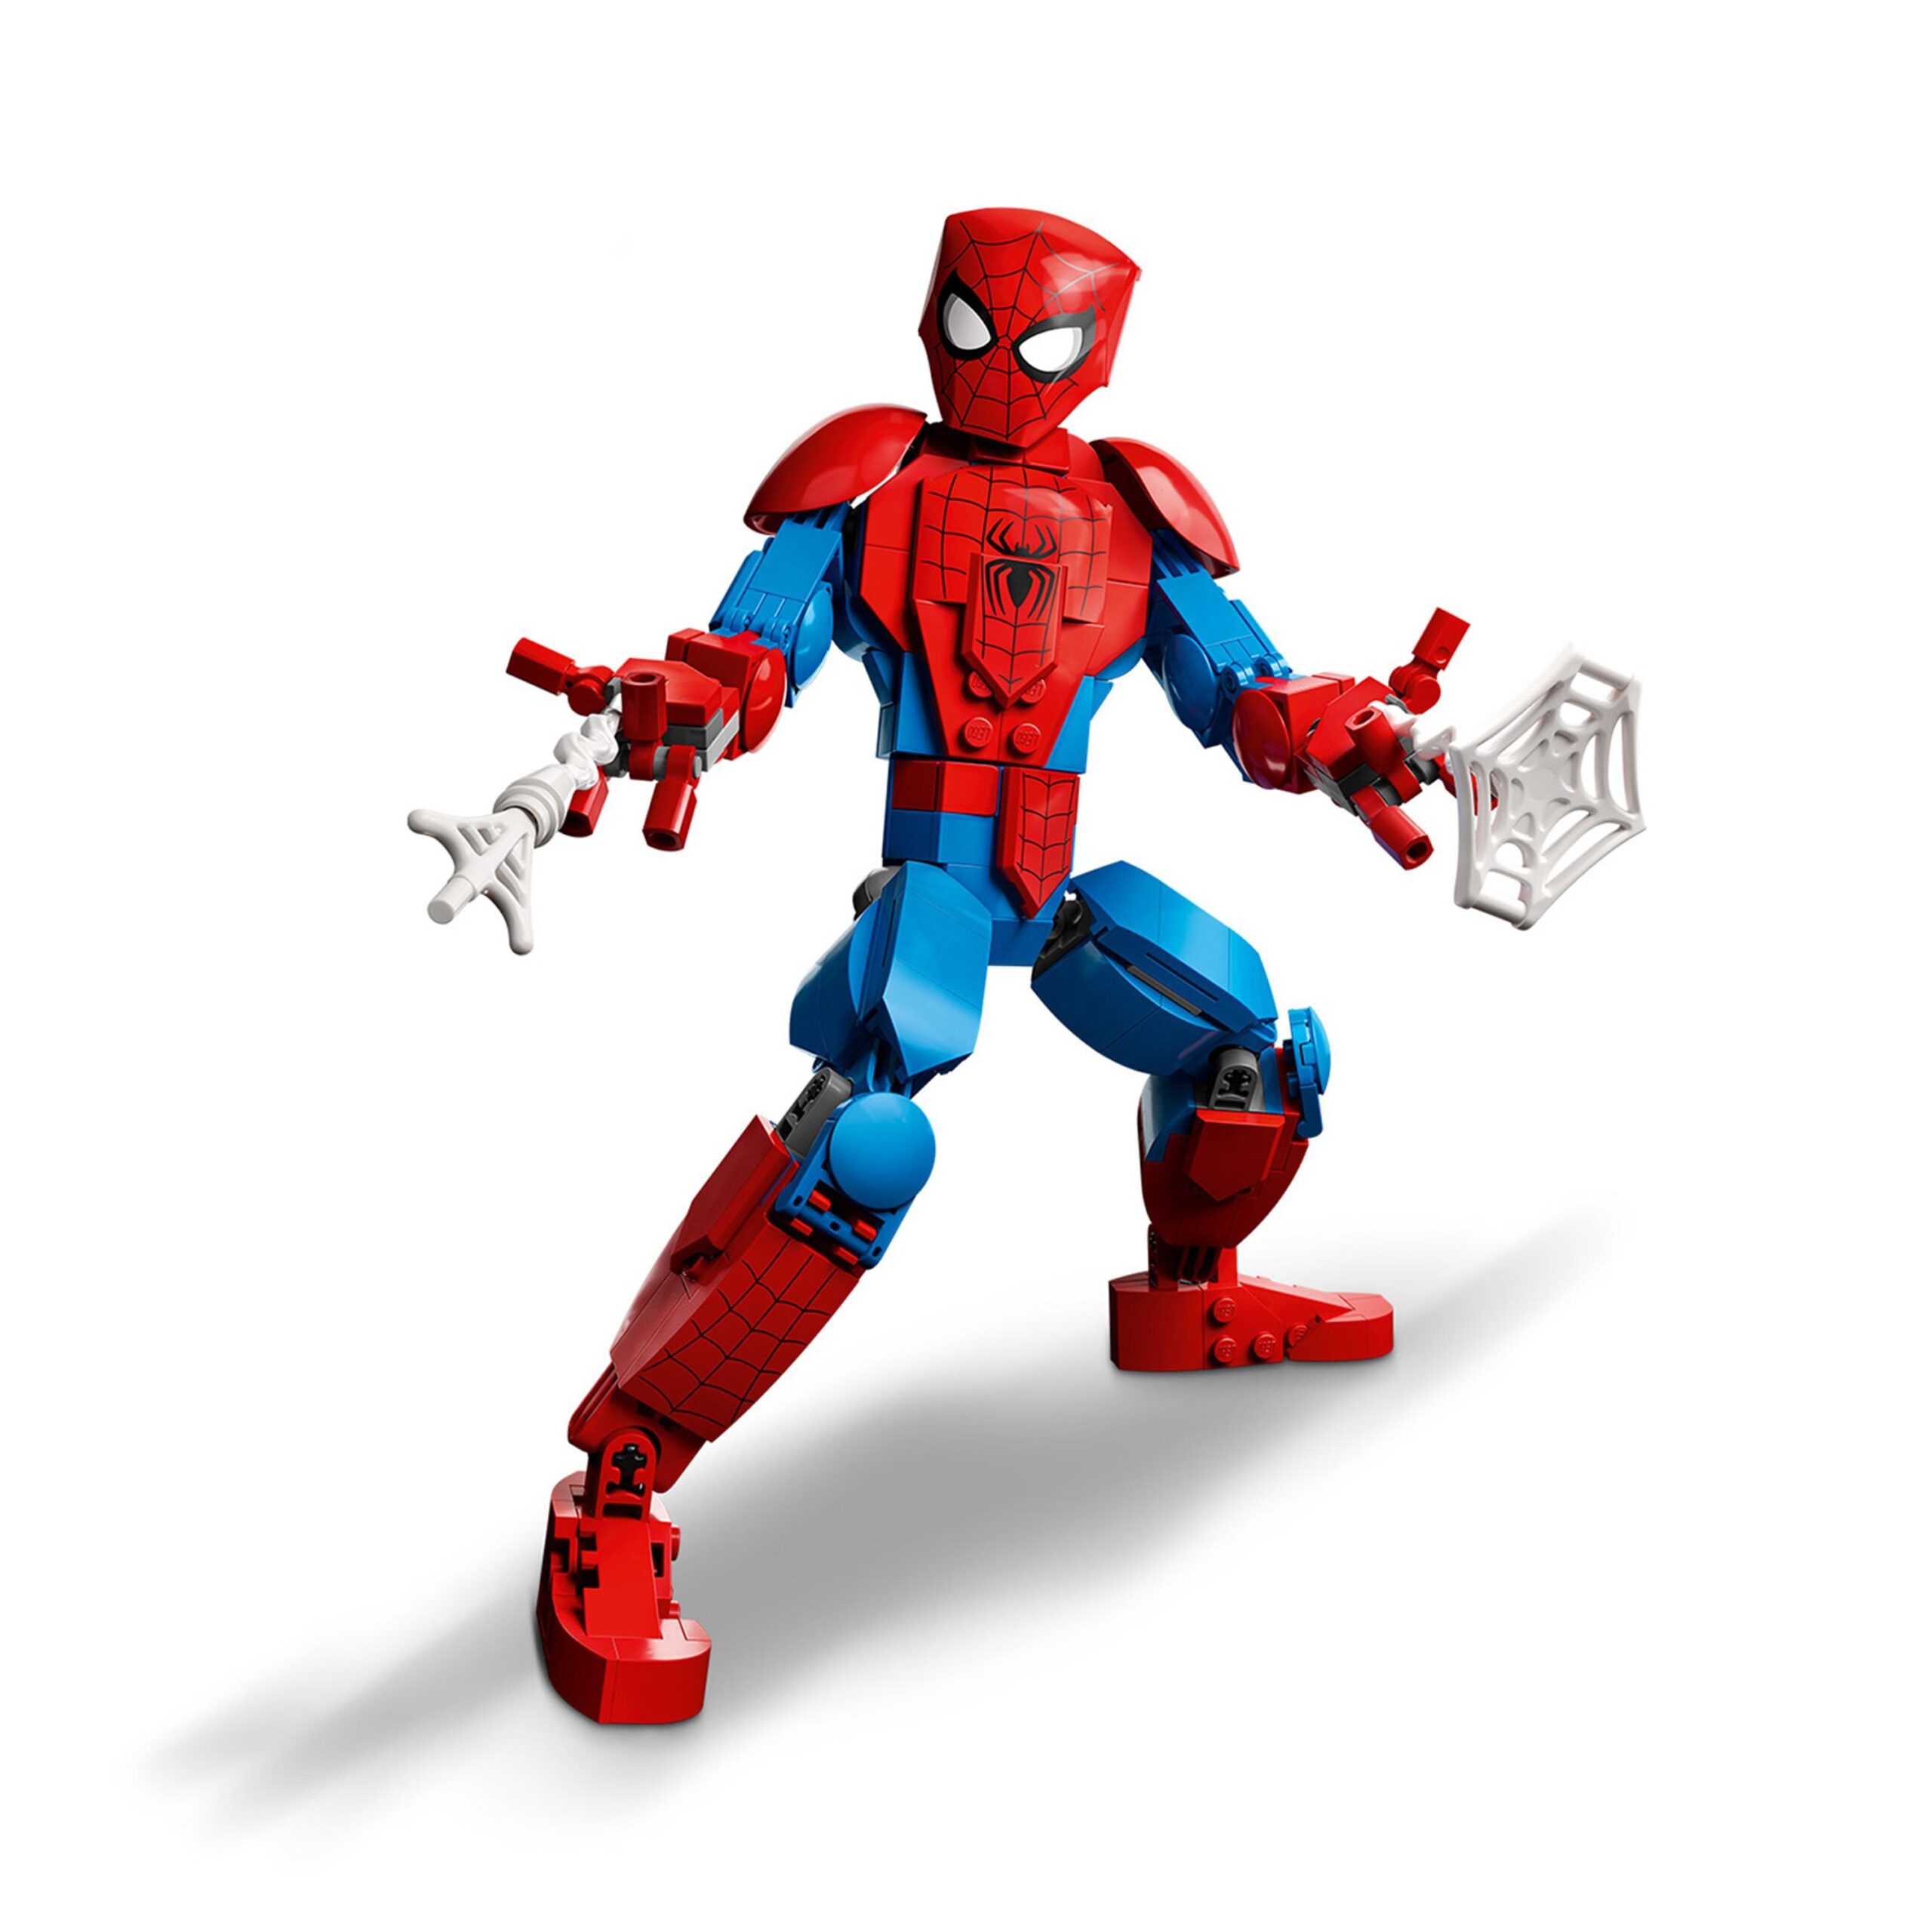 Lego marvel 76226 personaggio di spider-man, set action figure snodabile da collezione, film supereroi, giochi per bambini - LEGO SUPER HEROES